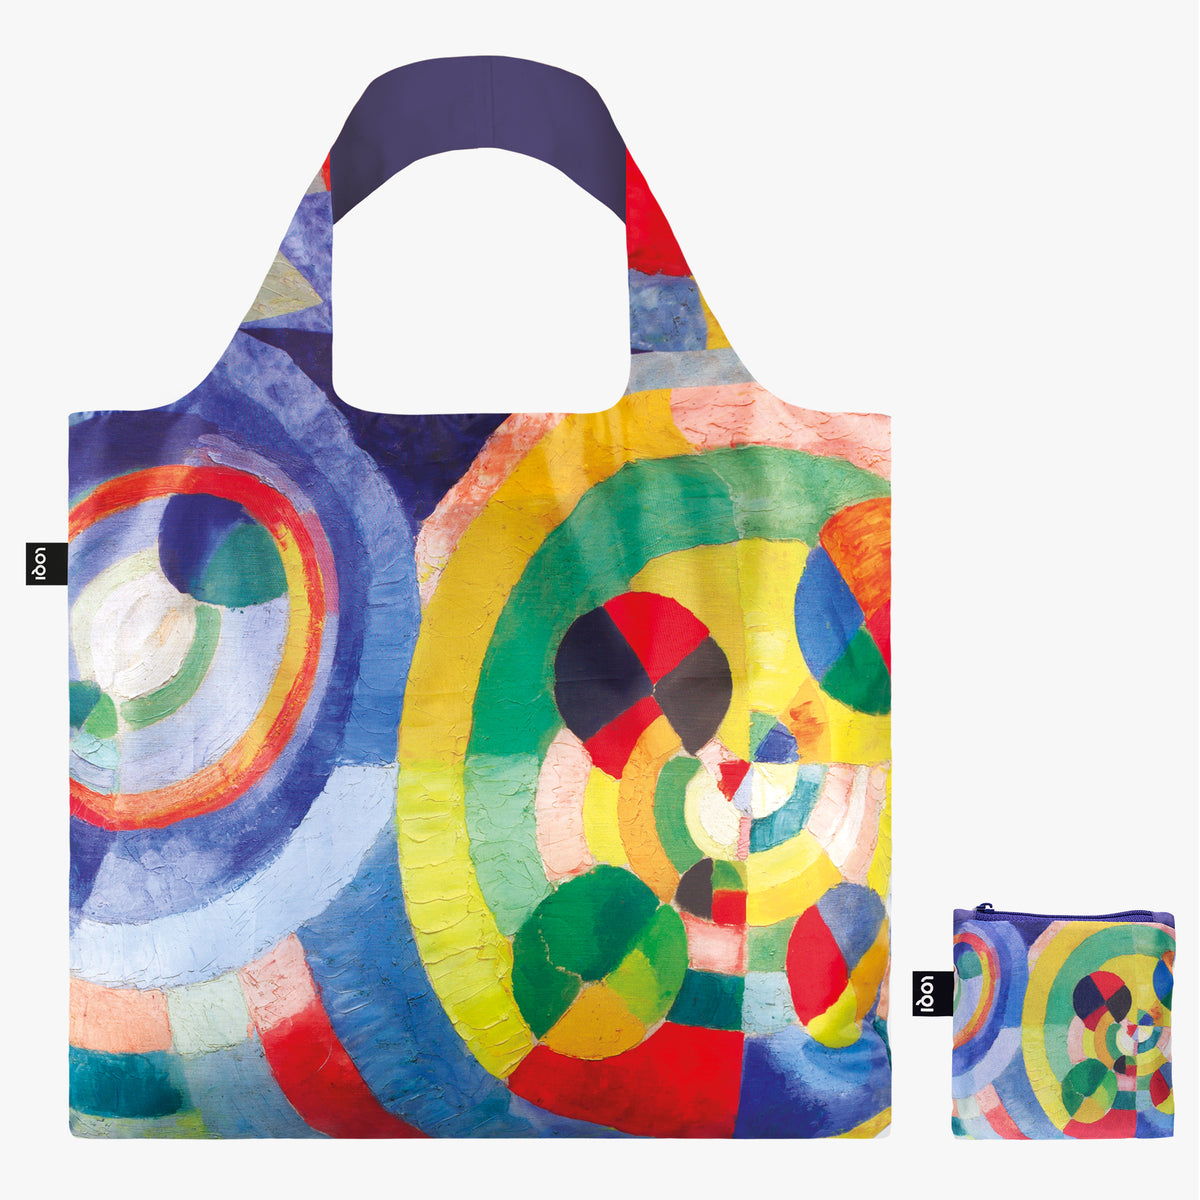 Circular Forms Recycled Bag